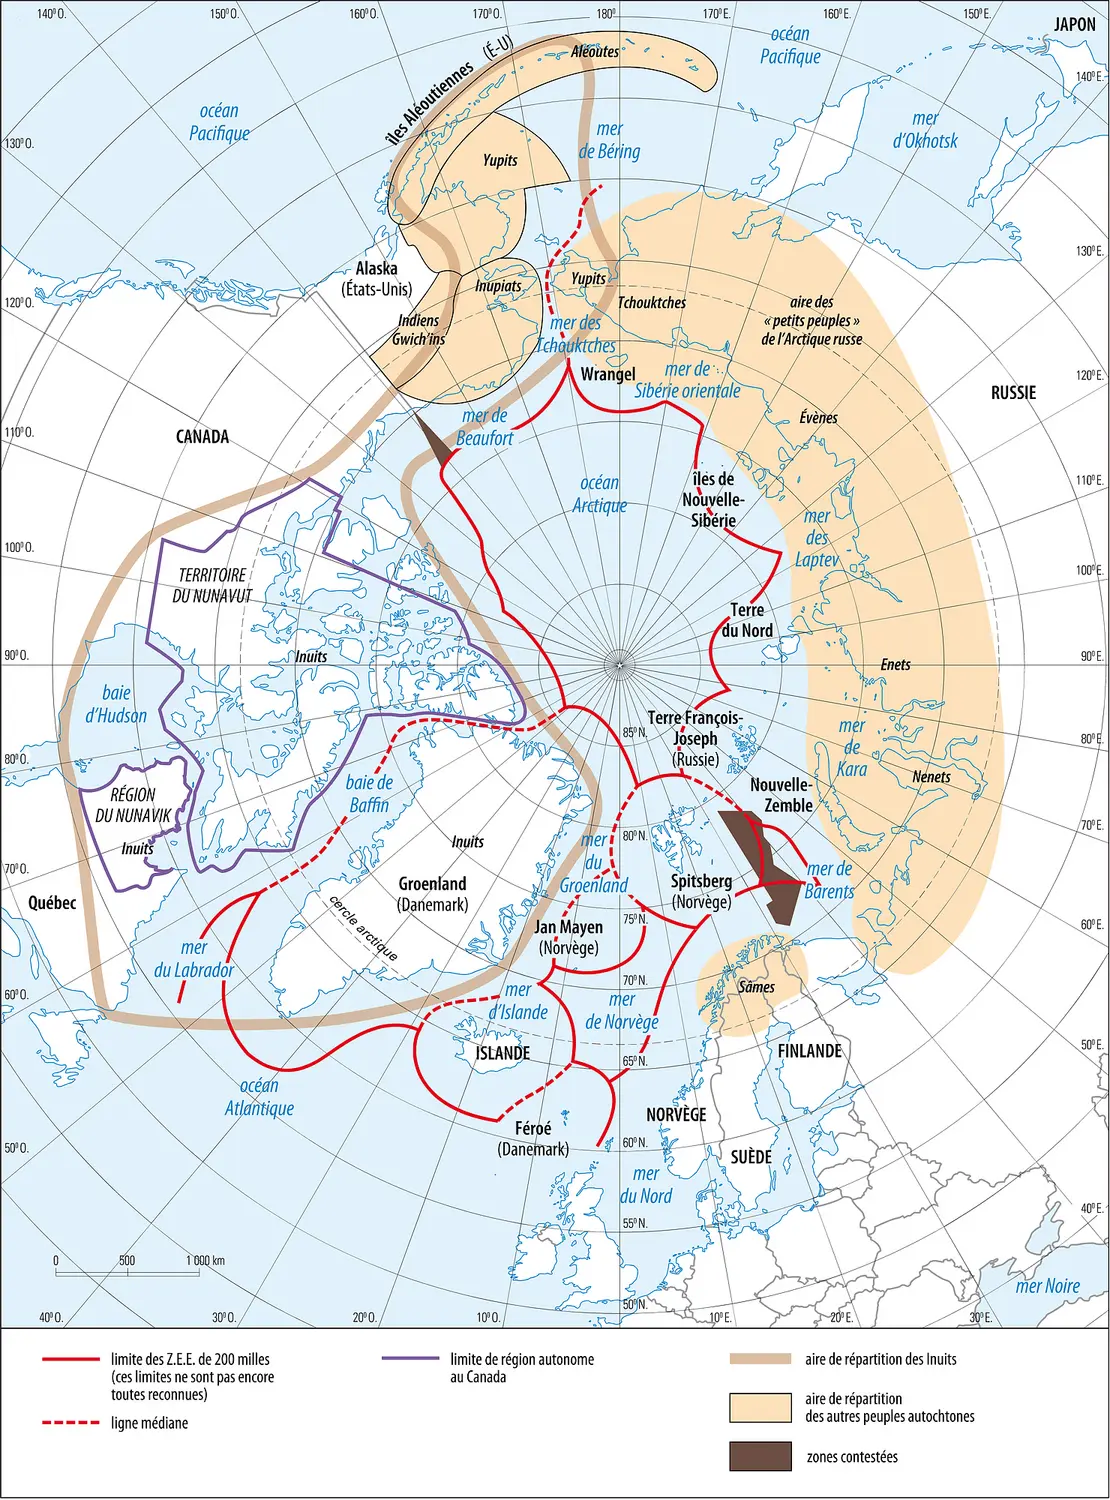 Arctique : situation politique